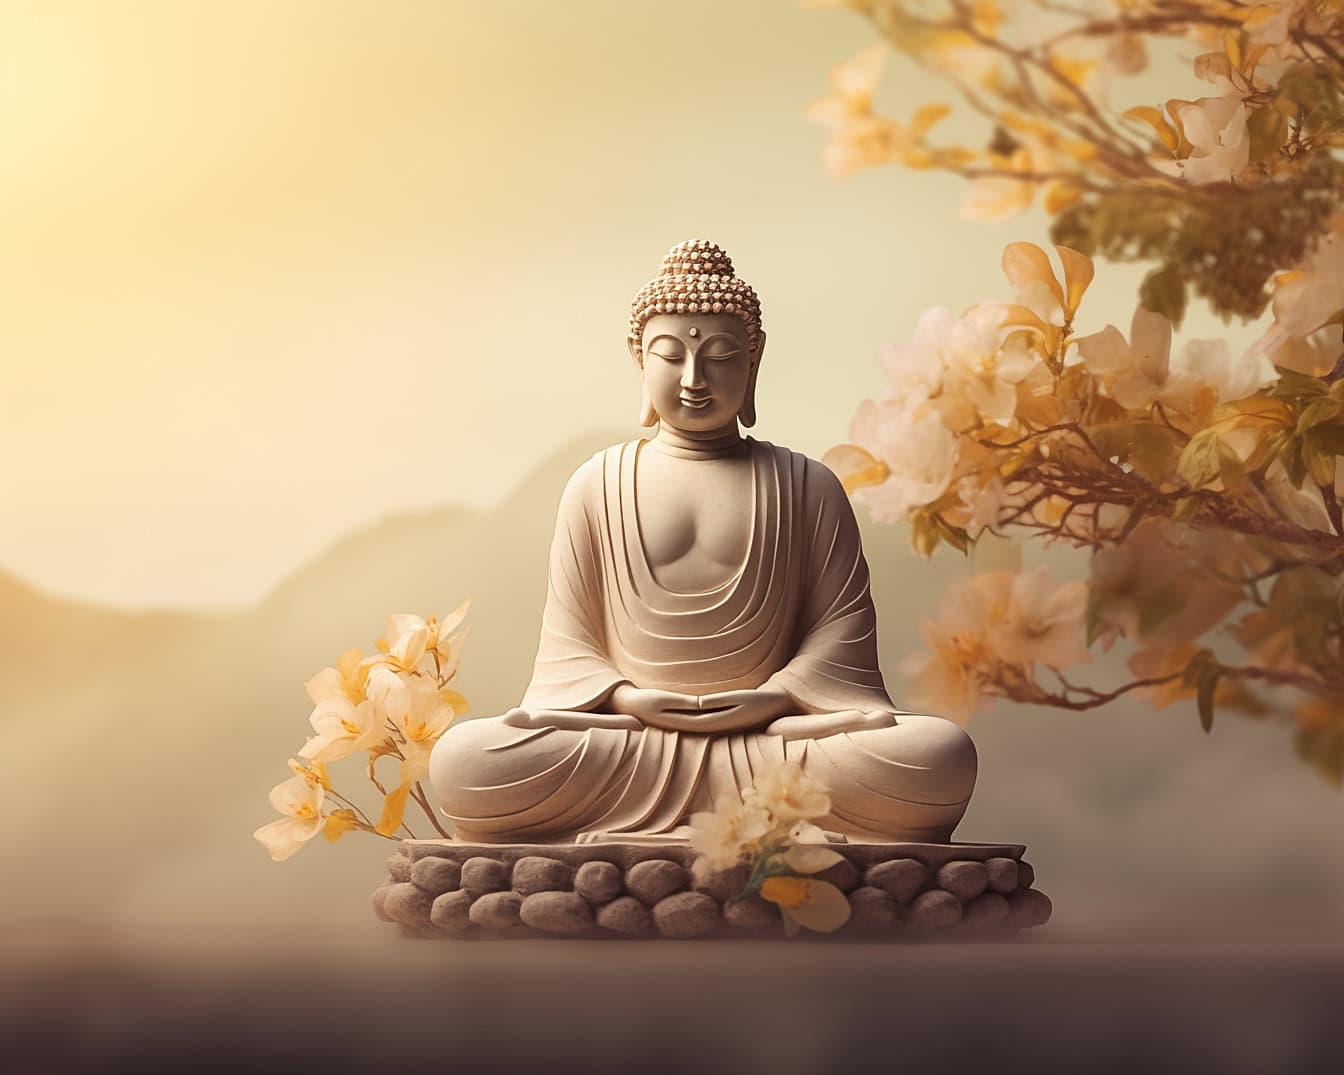 초월적 선 명상을 하는 부처님 동상이 꽃과 황금빛 태양 광선을 배경으로 공중에 떠 있는 돌 위에 앉아 있습니다.